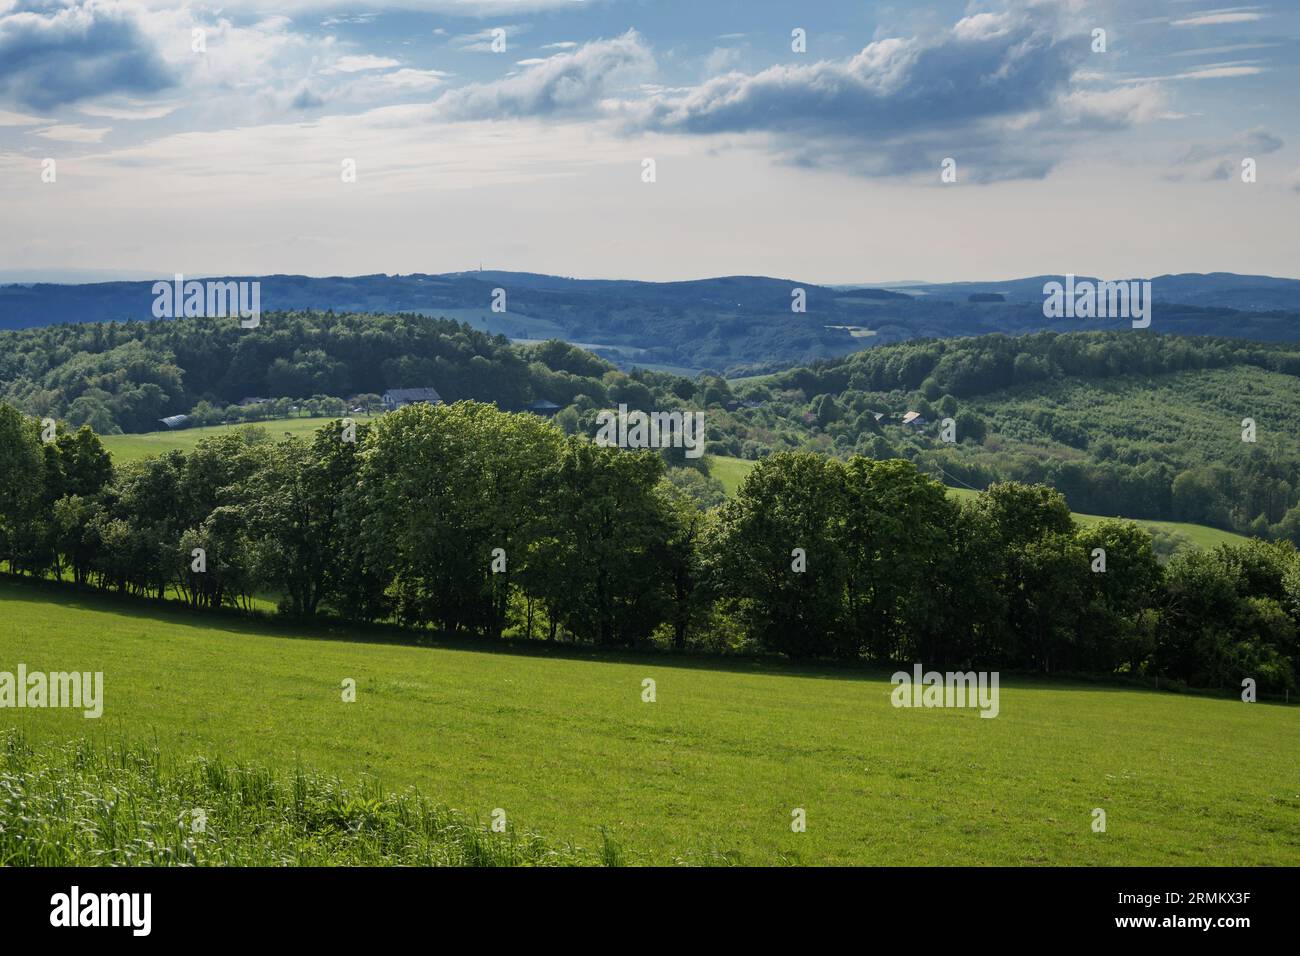 Paysage vallonné, bois et prairies, Lipa près de Zlin, république tchèque. Printemps. Banque D'Images